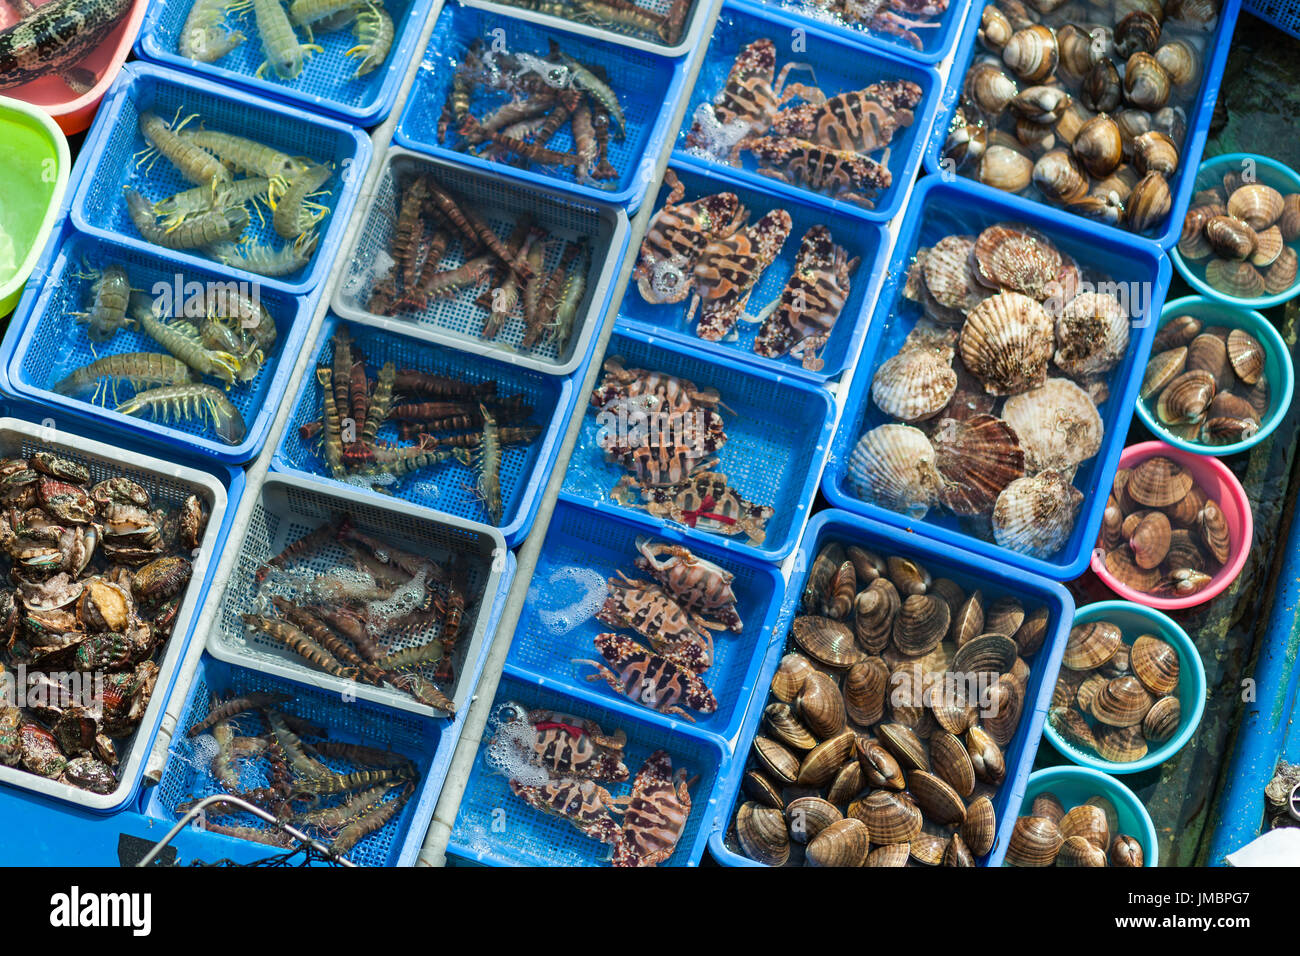 HONG KONG - JANUARY 10, 2015: Fishing boat at Sai Kung pier selling unusual assortment of live seafood. Hong Kong, china Stock Photo